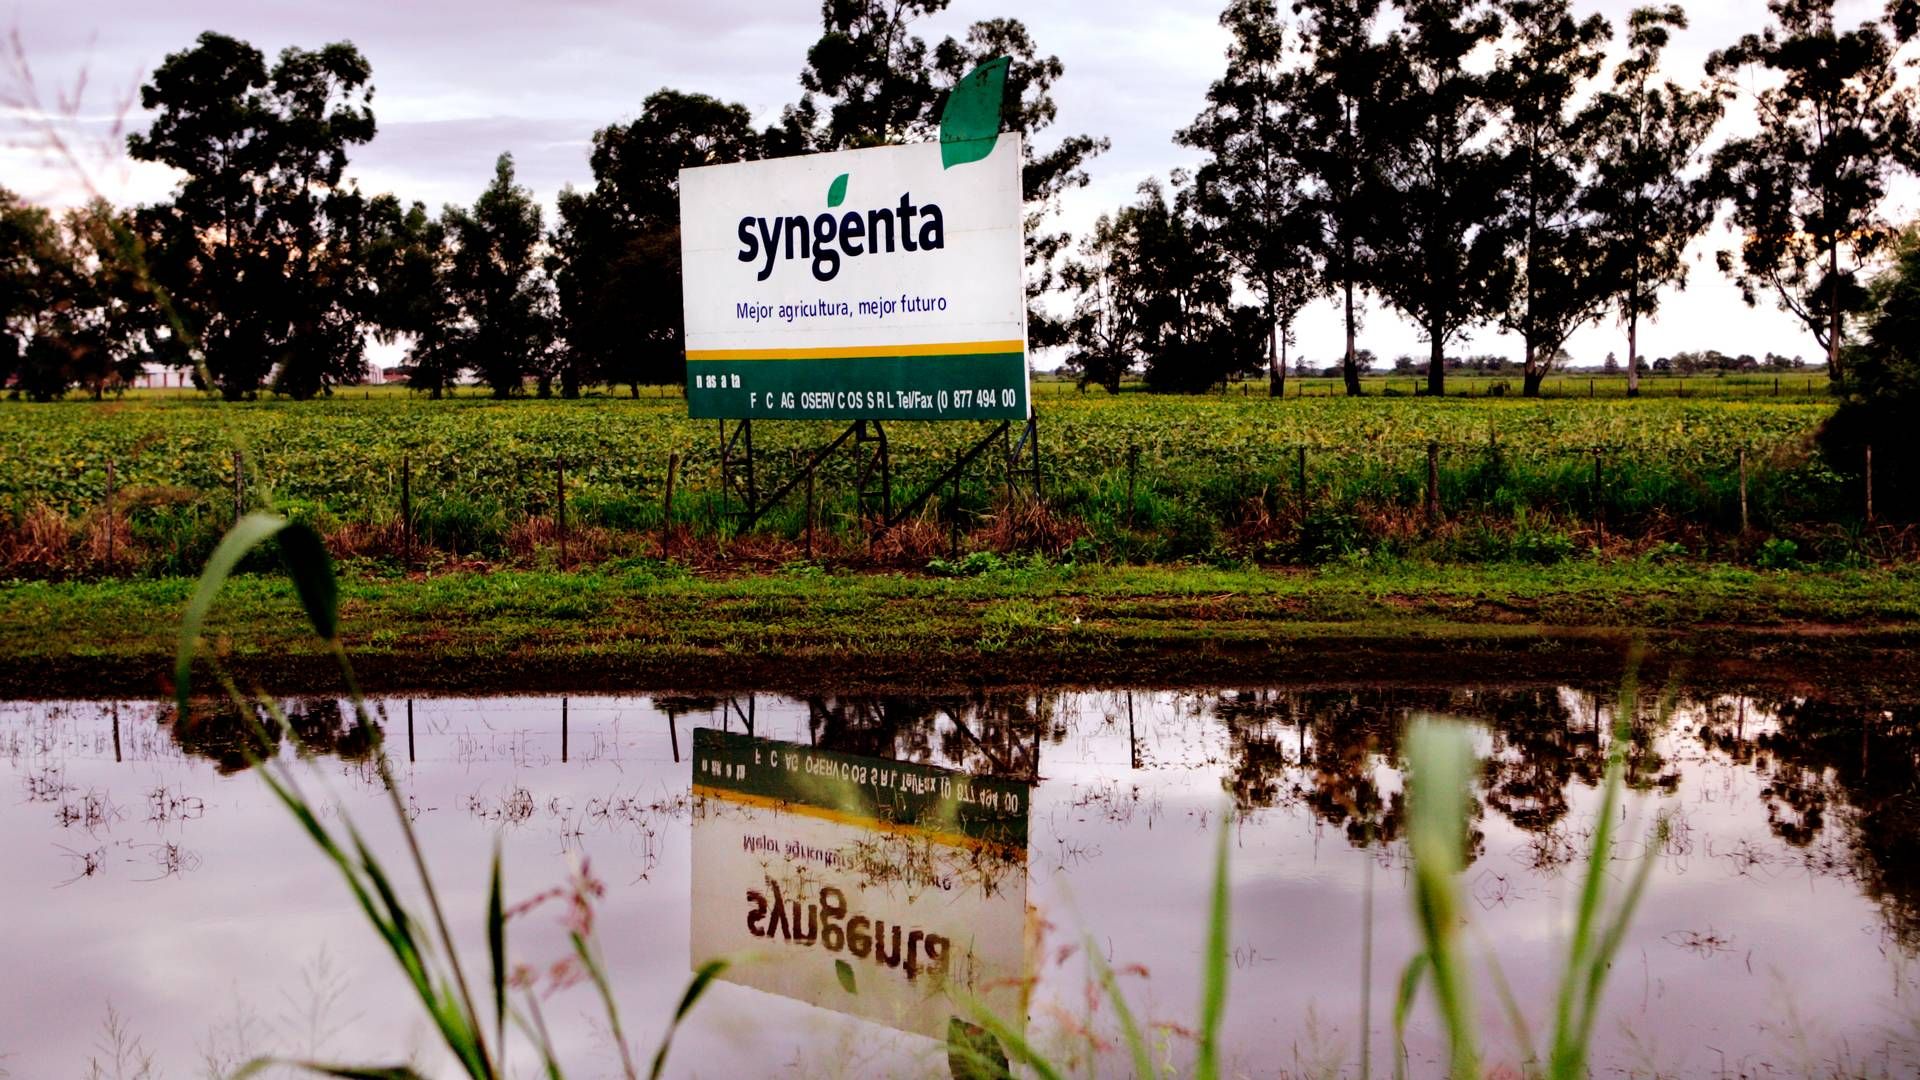 Syngenta producerer bl.a. pesticider og gødning. | Foto: Thomas Borberg